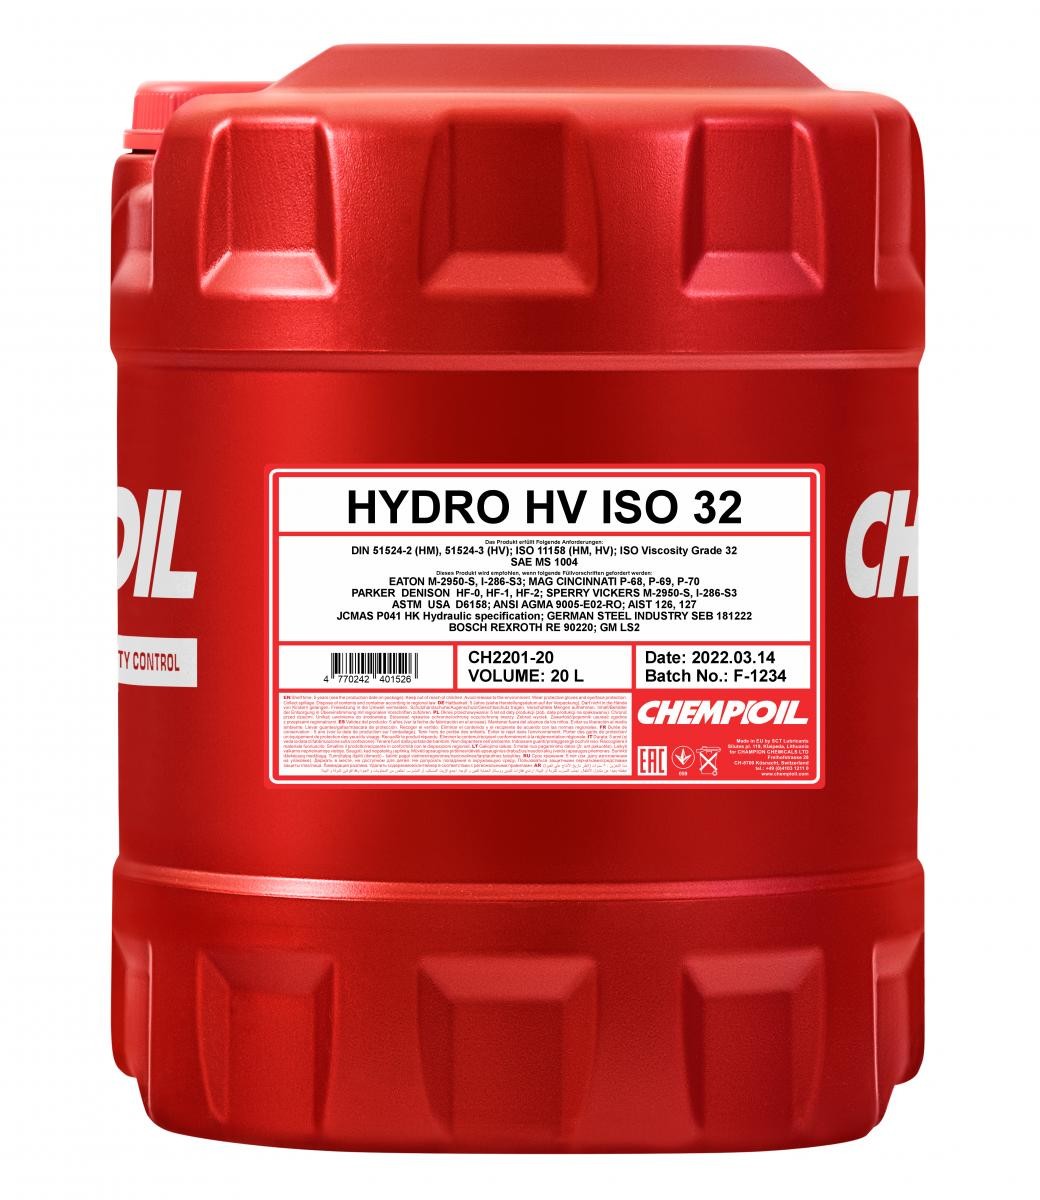 CHEMPIOIL Hydro HV, ISO 32 Capacity: 20l SAE MS 1004, DIN 51524-2 HM, DIN 51524-3 HV, ISO 11158 HM, ISO 11158 HV, ASTM USA D6158 Hydraulic fluid CH2201-20 buy